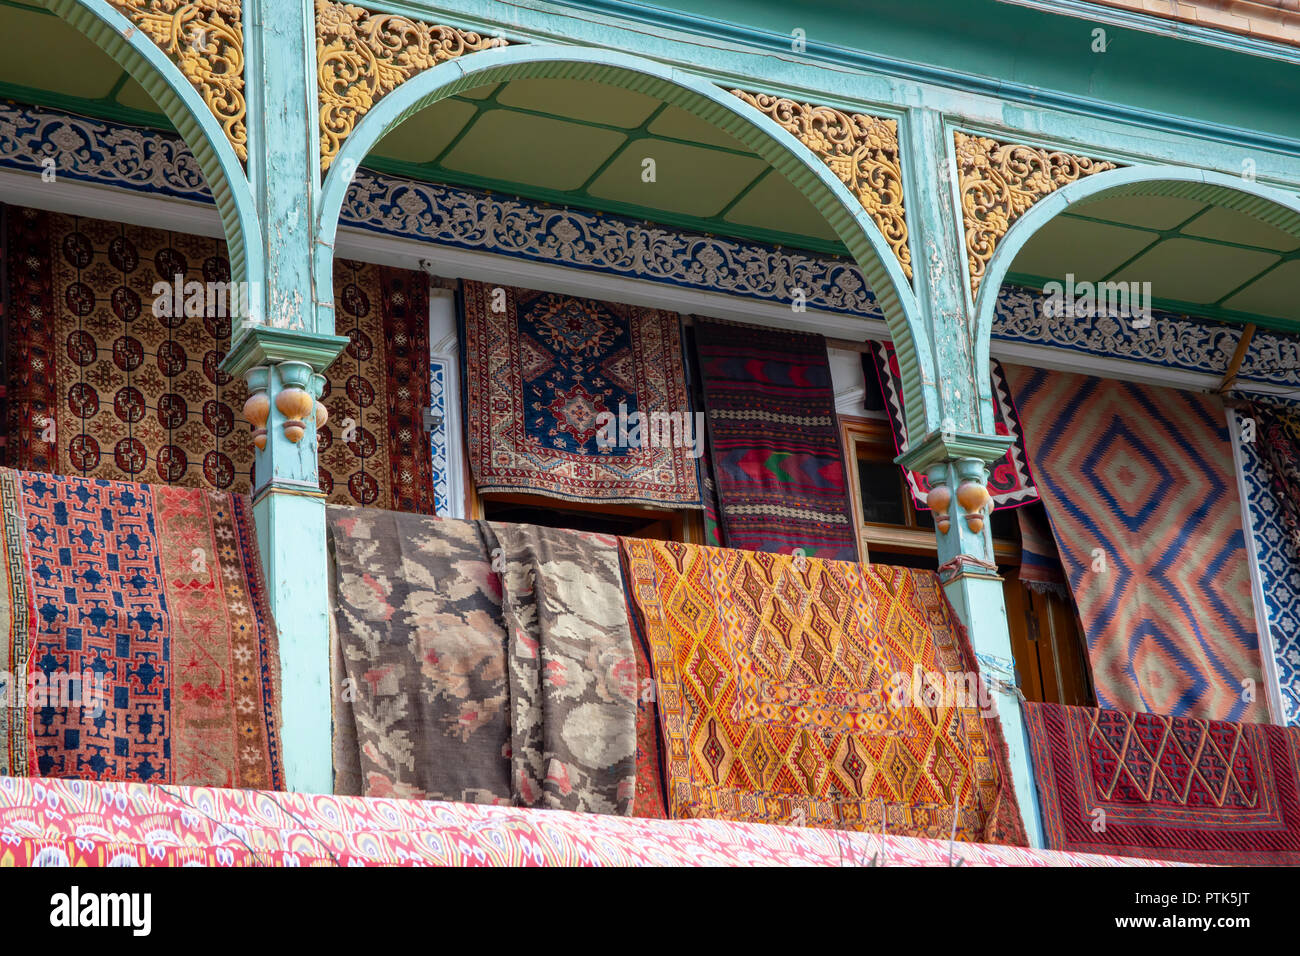 Display of carpets on display in shop of Old City Kashgar, or Kashi, Xinjiang, China. Stock Photo